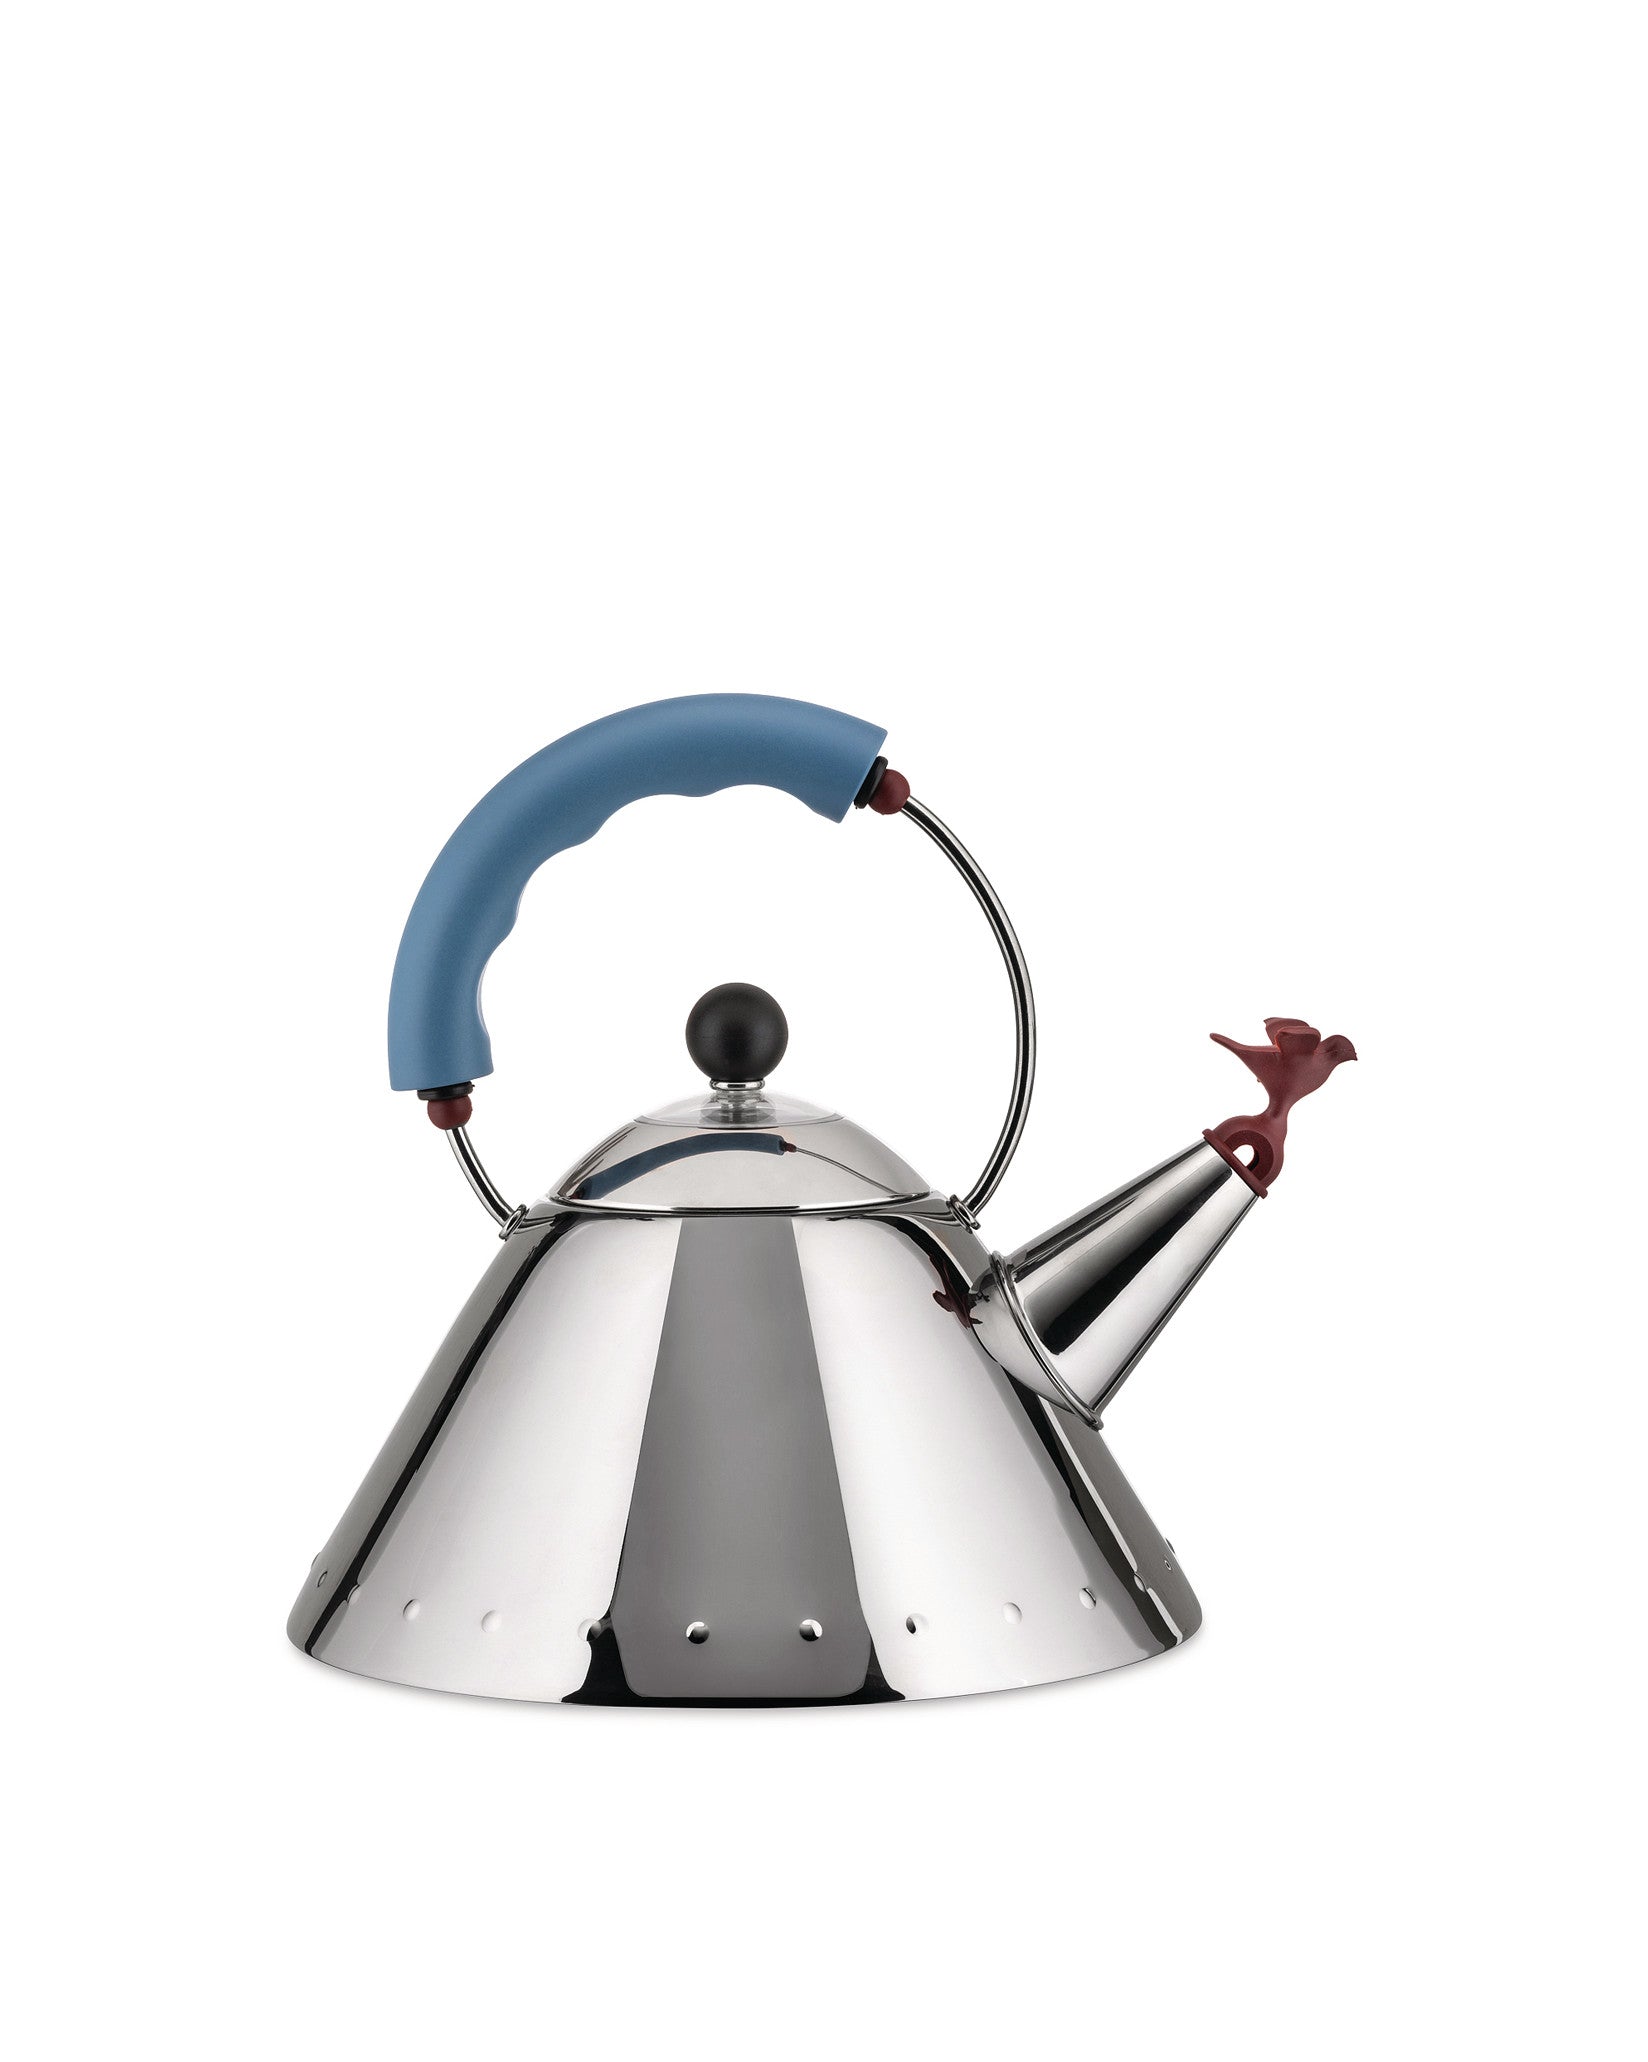 Der ikonische und unverkennbare 9093 bird whistle kettle von Michael Graves. Kegelförmiger Wasserkocher aus Edelstahl für Induktionskochfelder mit mehrfarbigen Griffen.